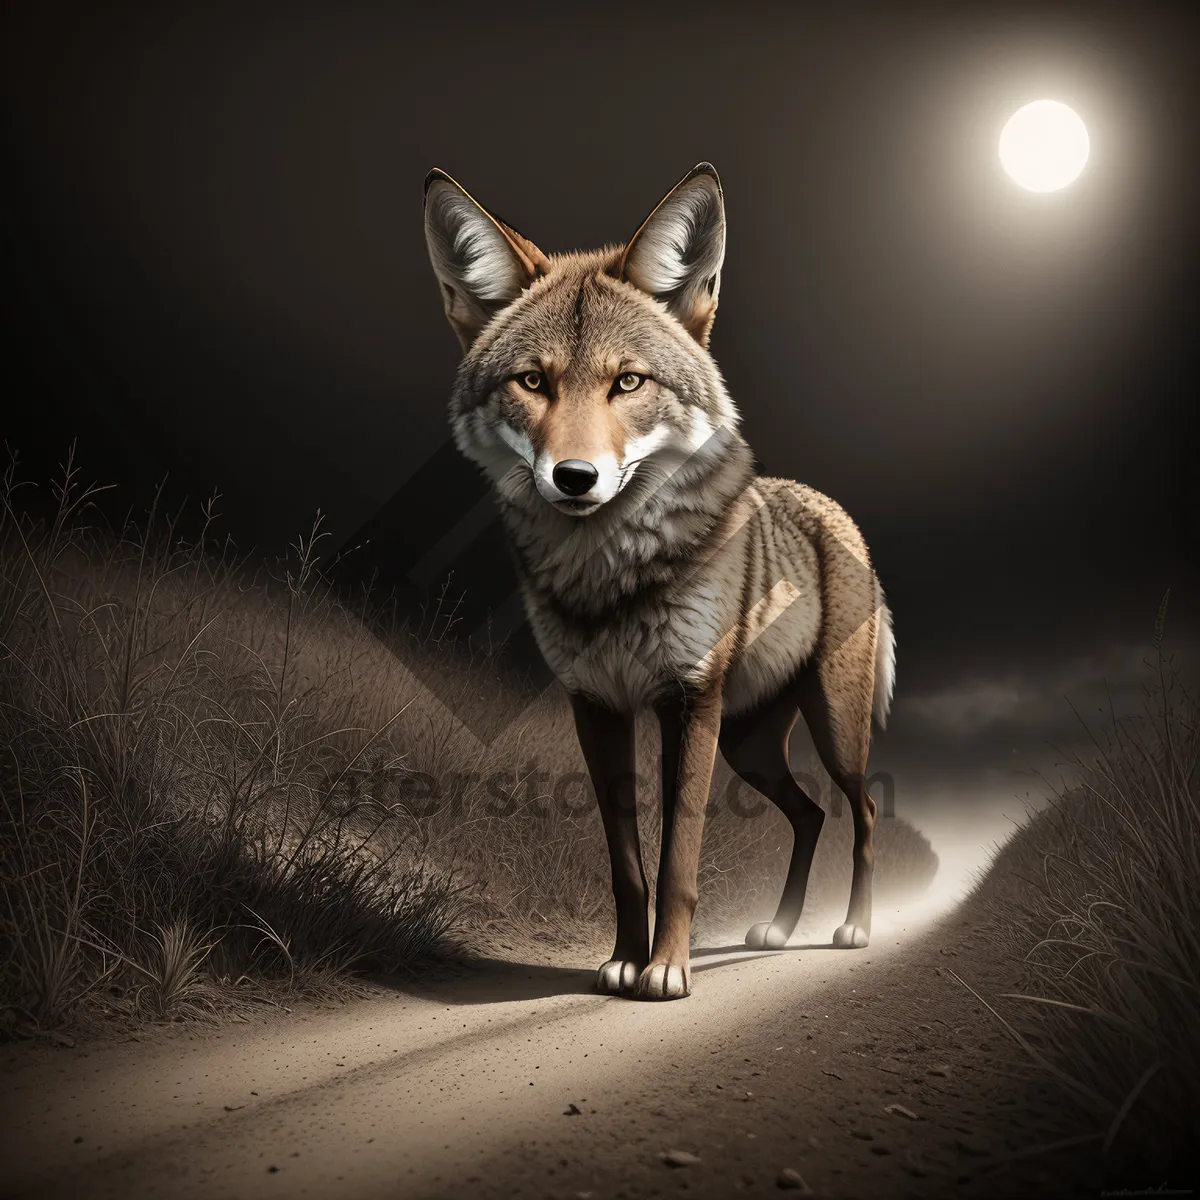 Picture of Wild Canine Predator - Majestic Coyote Hunting in Safari